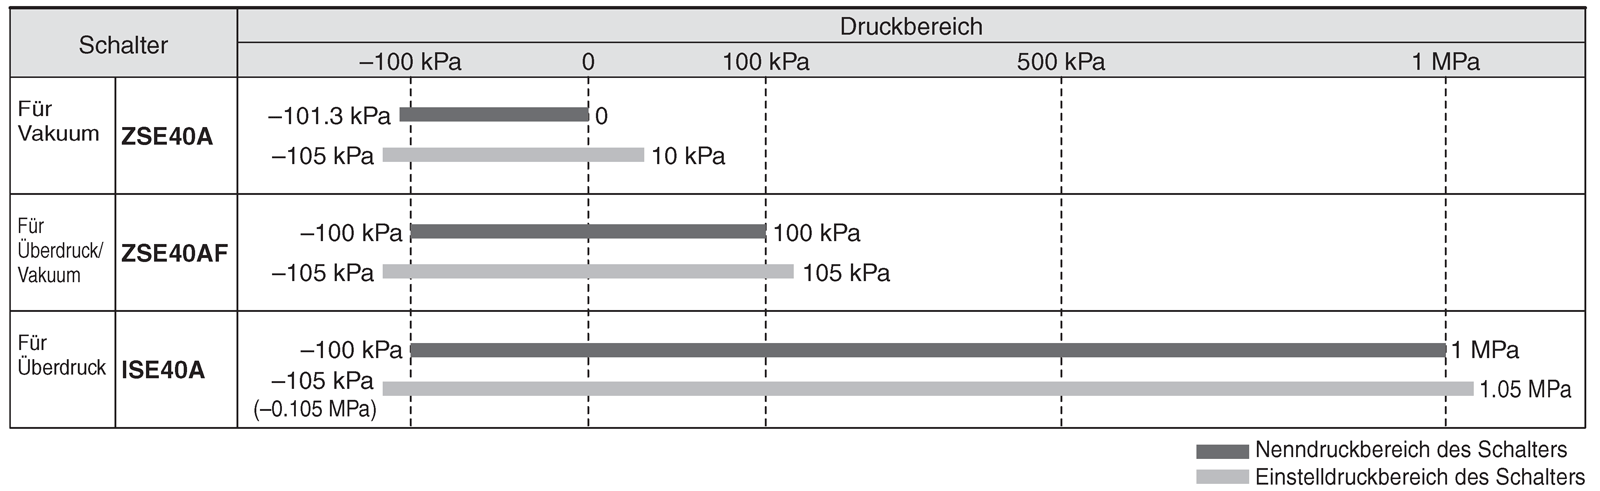 Diagramm von Schalter-Nenndruckbereich / Einstelldruckbereich